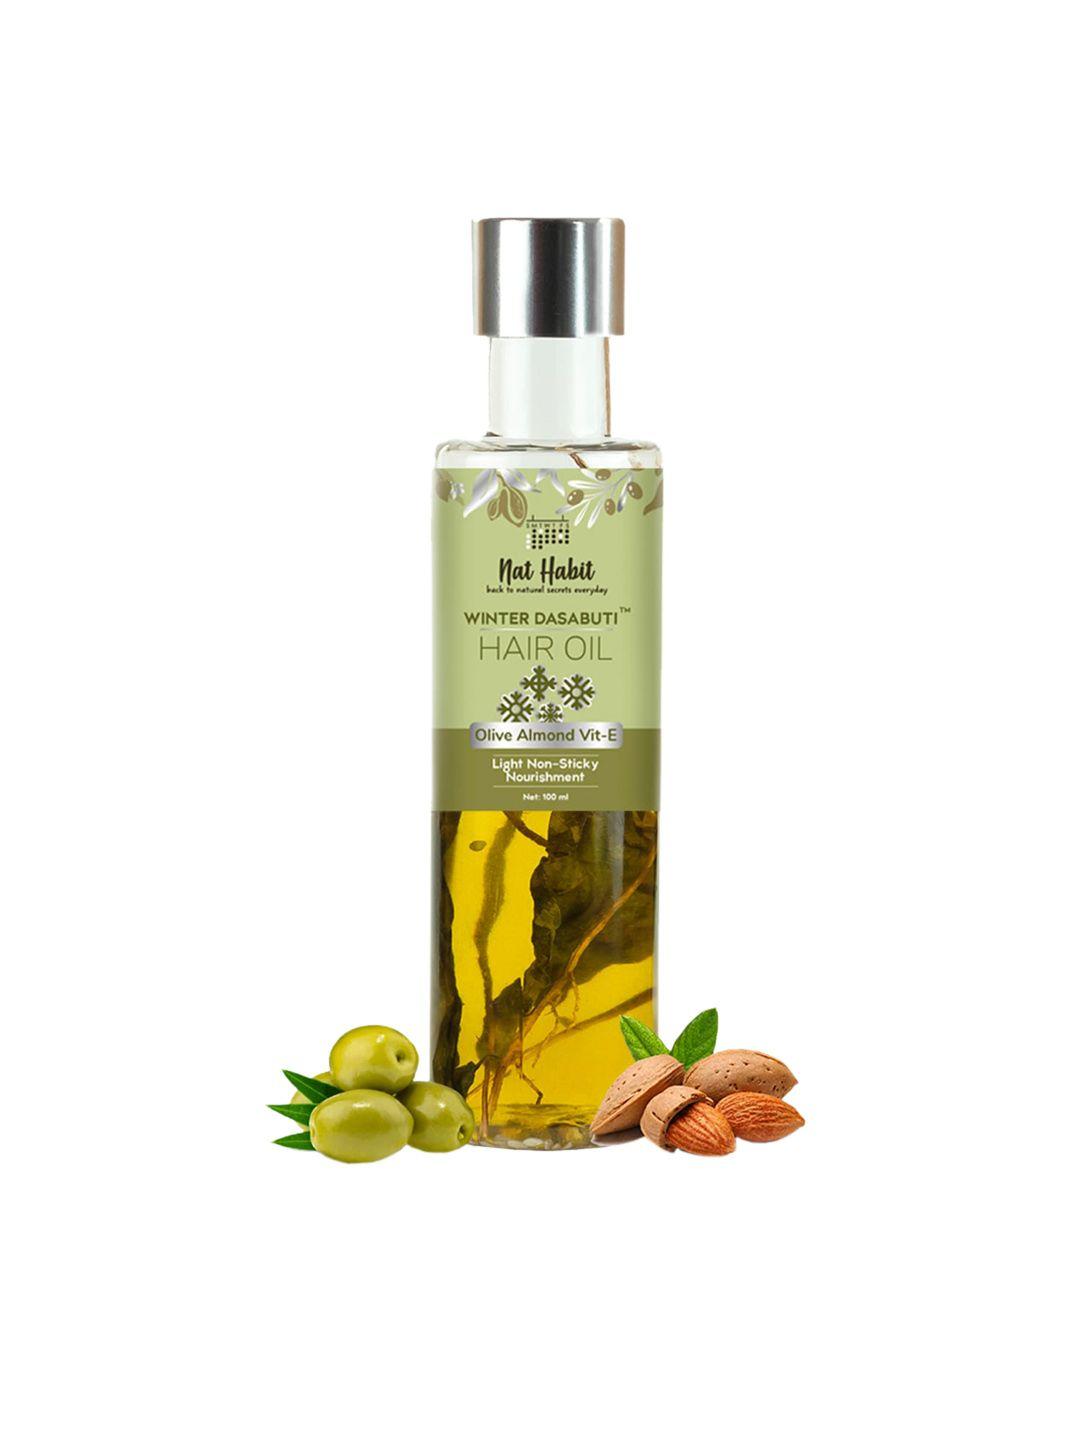 nat-habit-olive-almond-vit-e-winter-dasabuti-light-non-sticky-hair-oil---100-ml